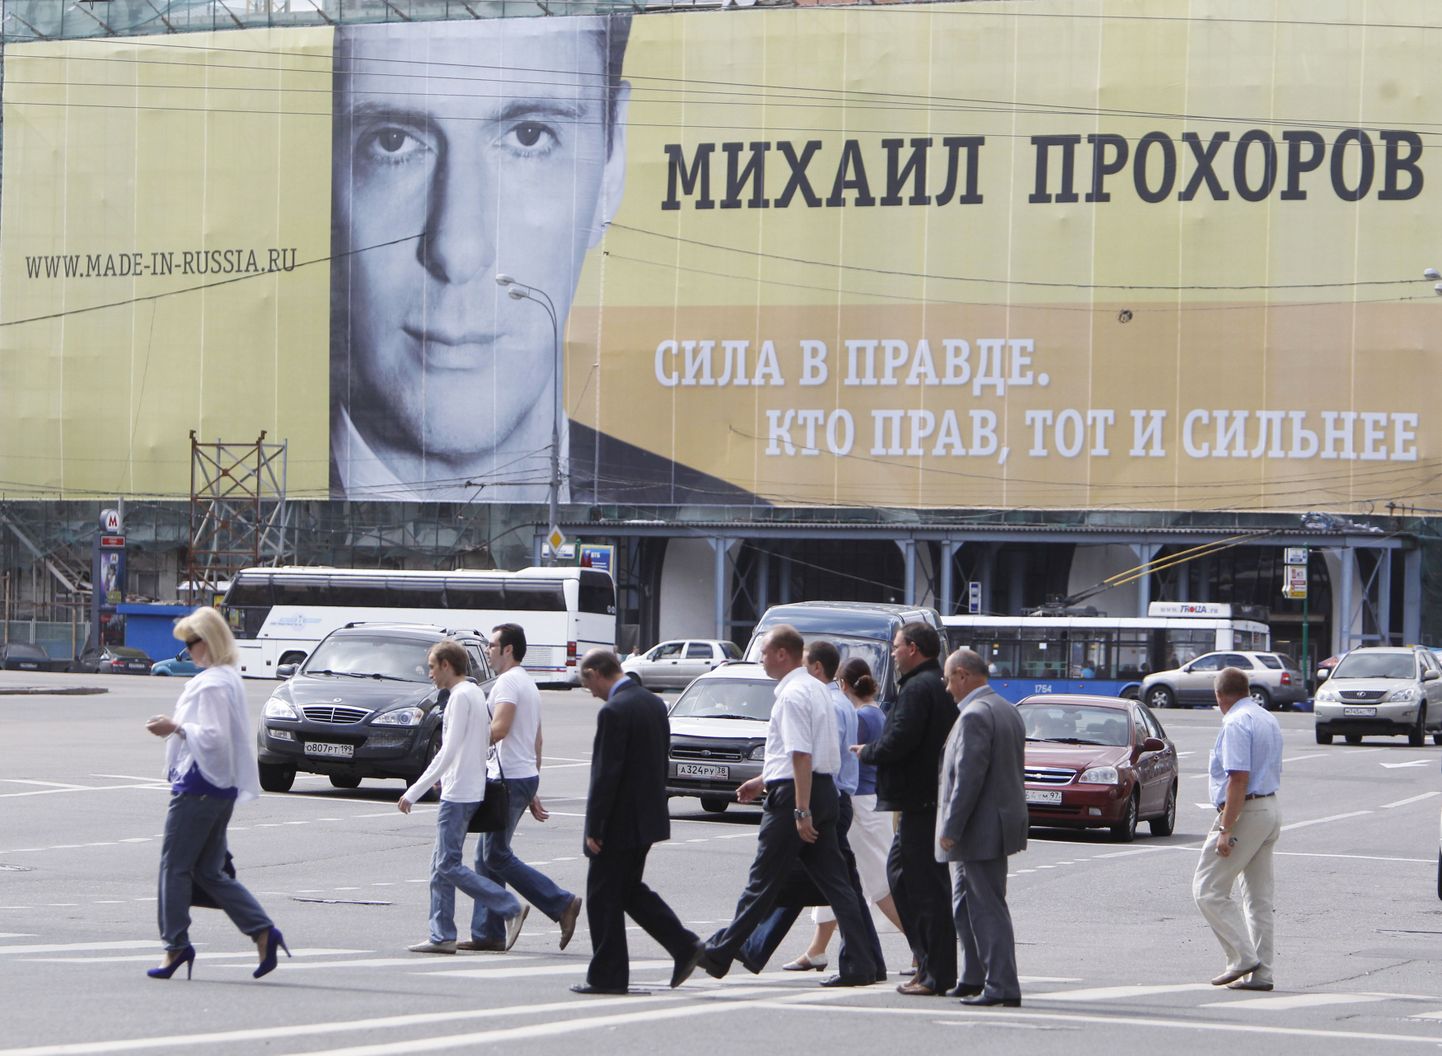 Prohhorov Õiglase Ürituse plakatil Moskvas.